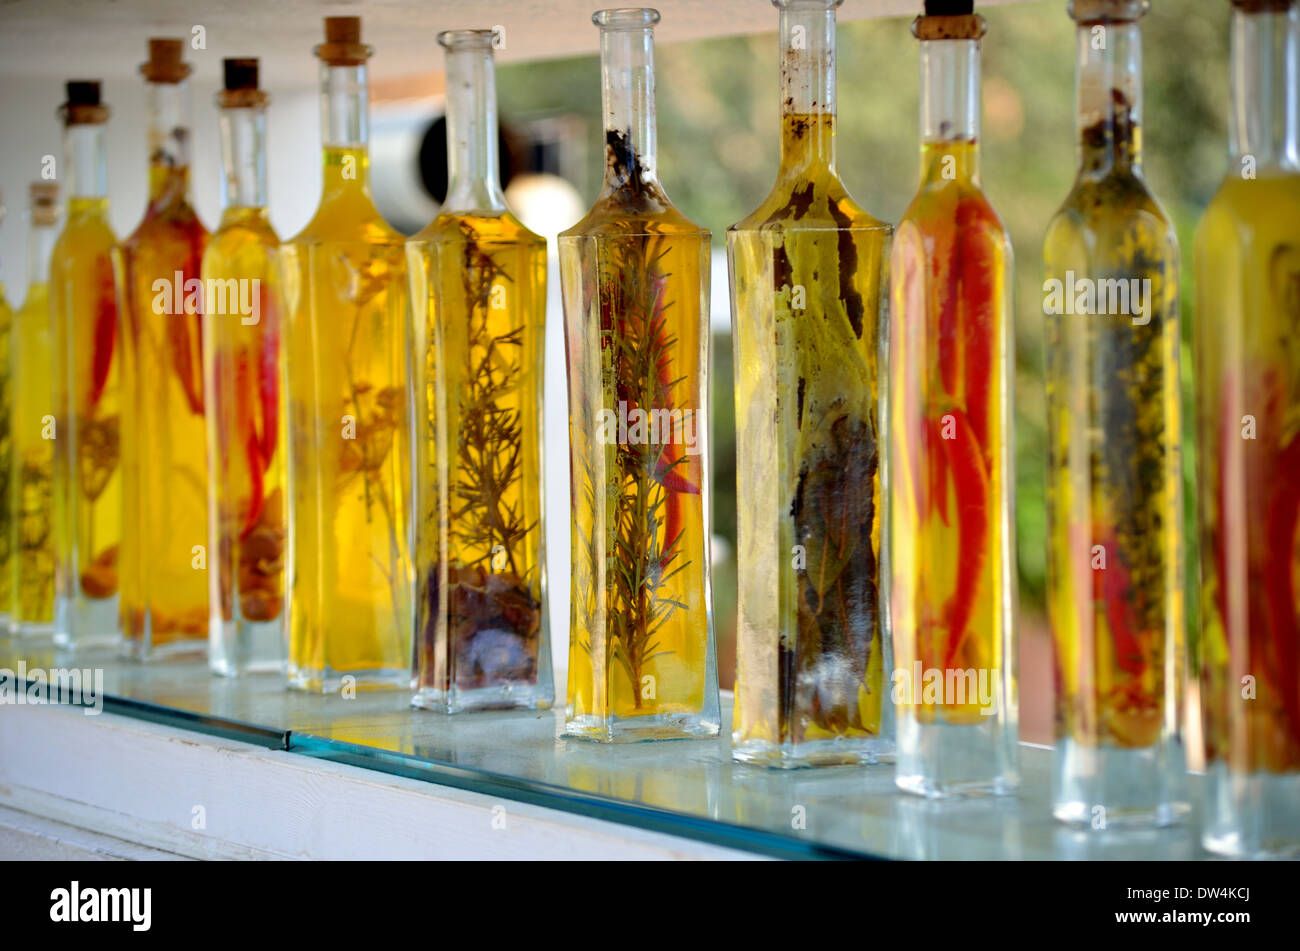 Decorative Bottles Of Olive Oil On A Glass Shelf Stock Photo